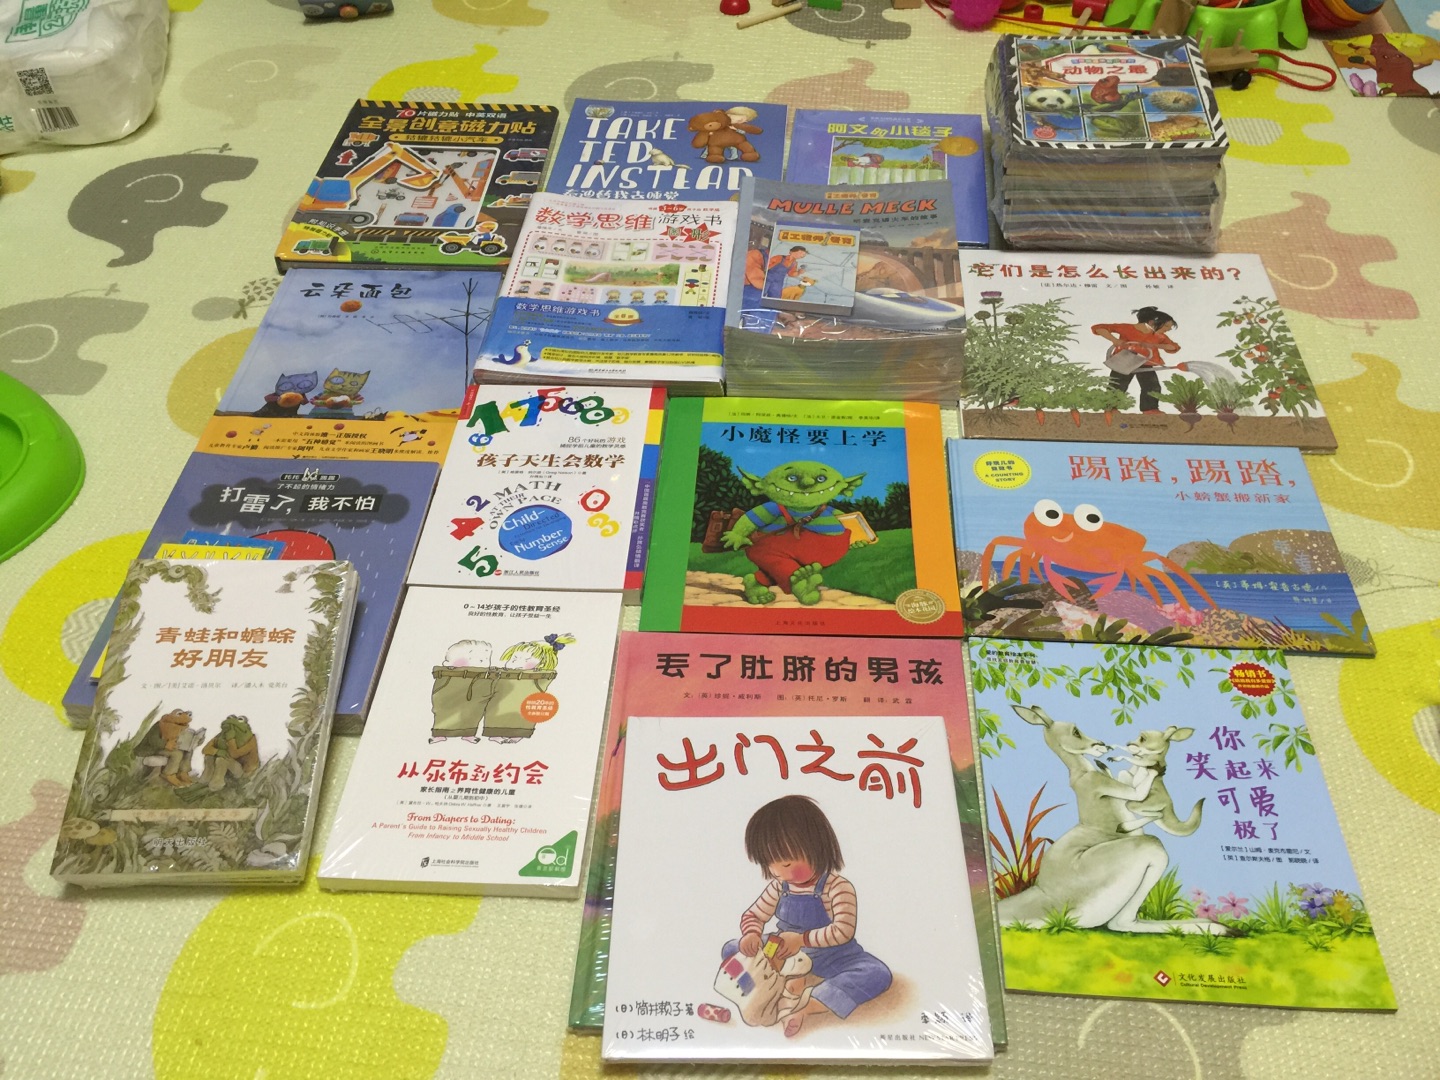 都说这个书挺有意思的 有中文和英文两个版本 买了中文的 提前给孩子囤着 内容应该不错 活动价格很合适